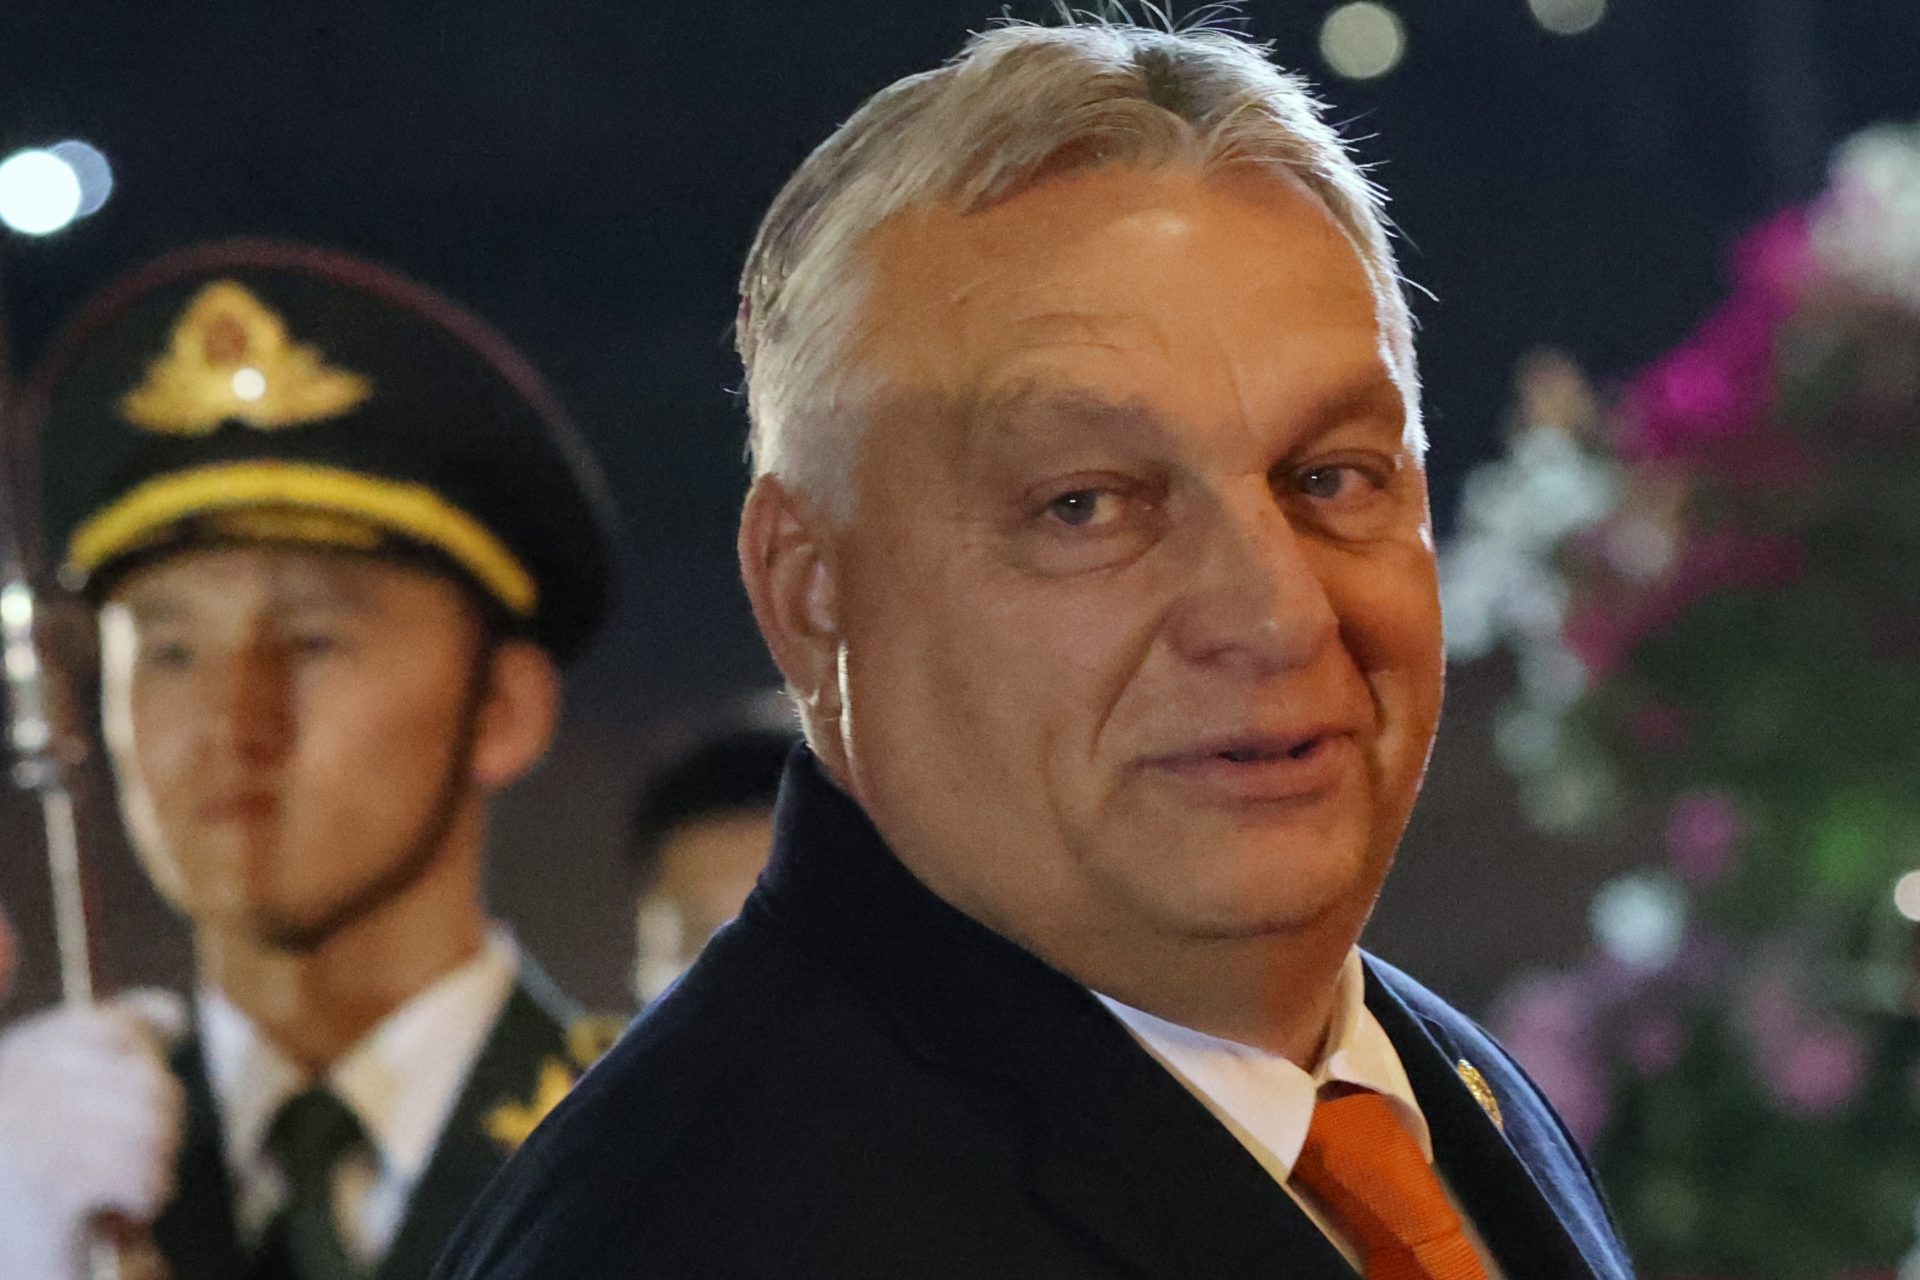 Viktor Orbán in Hungary 